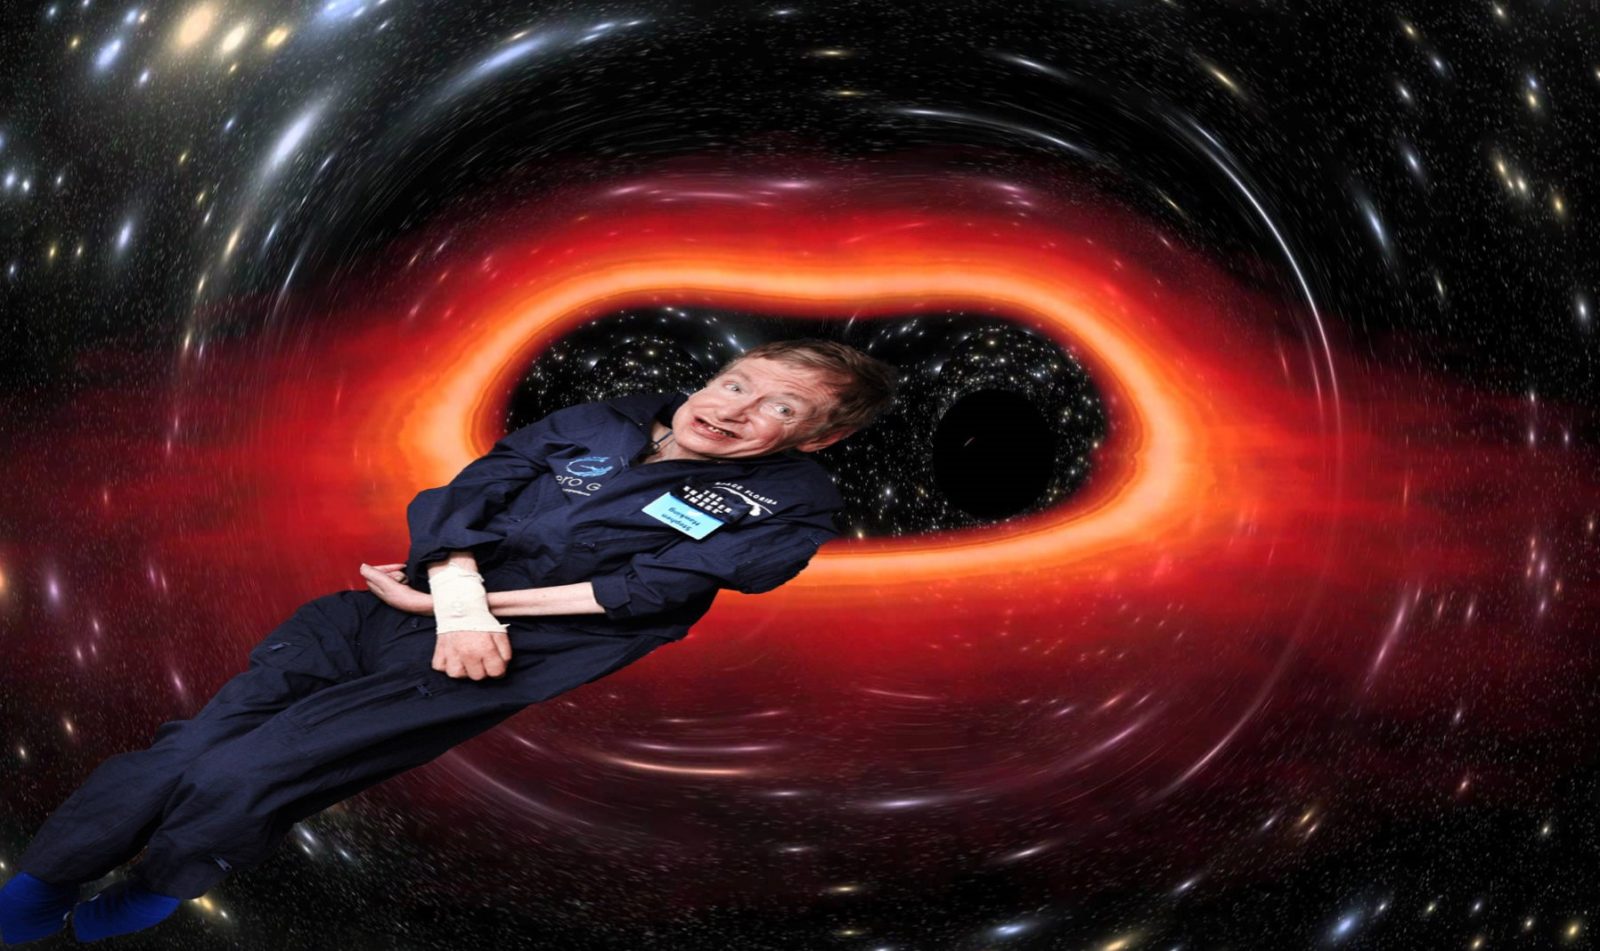 La voz de Stephen Hawking será enviada a través de un agujero negro